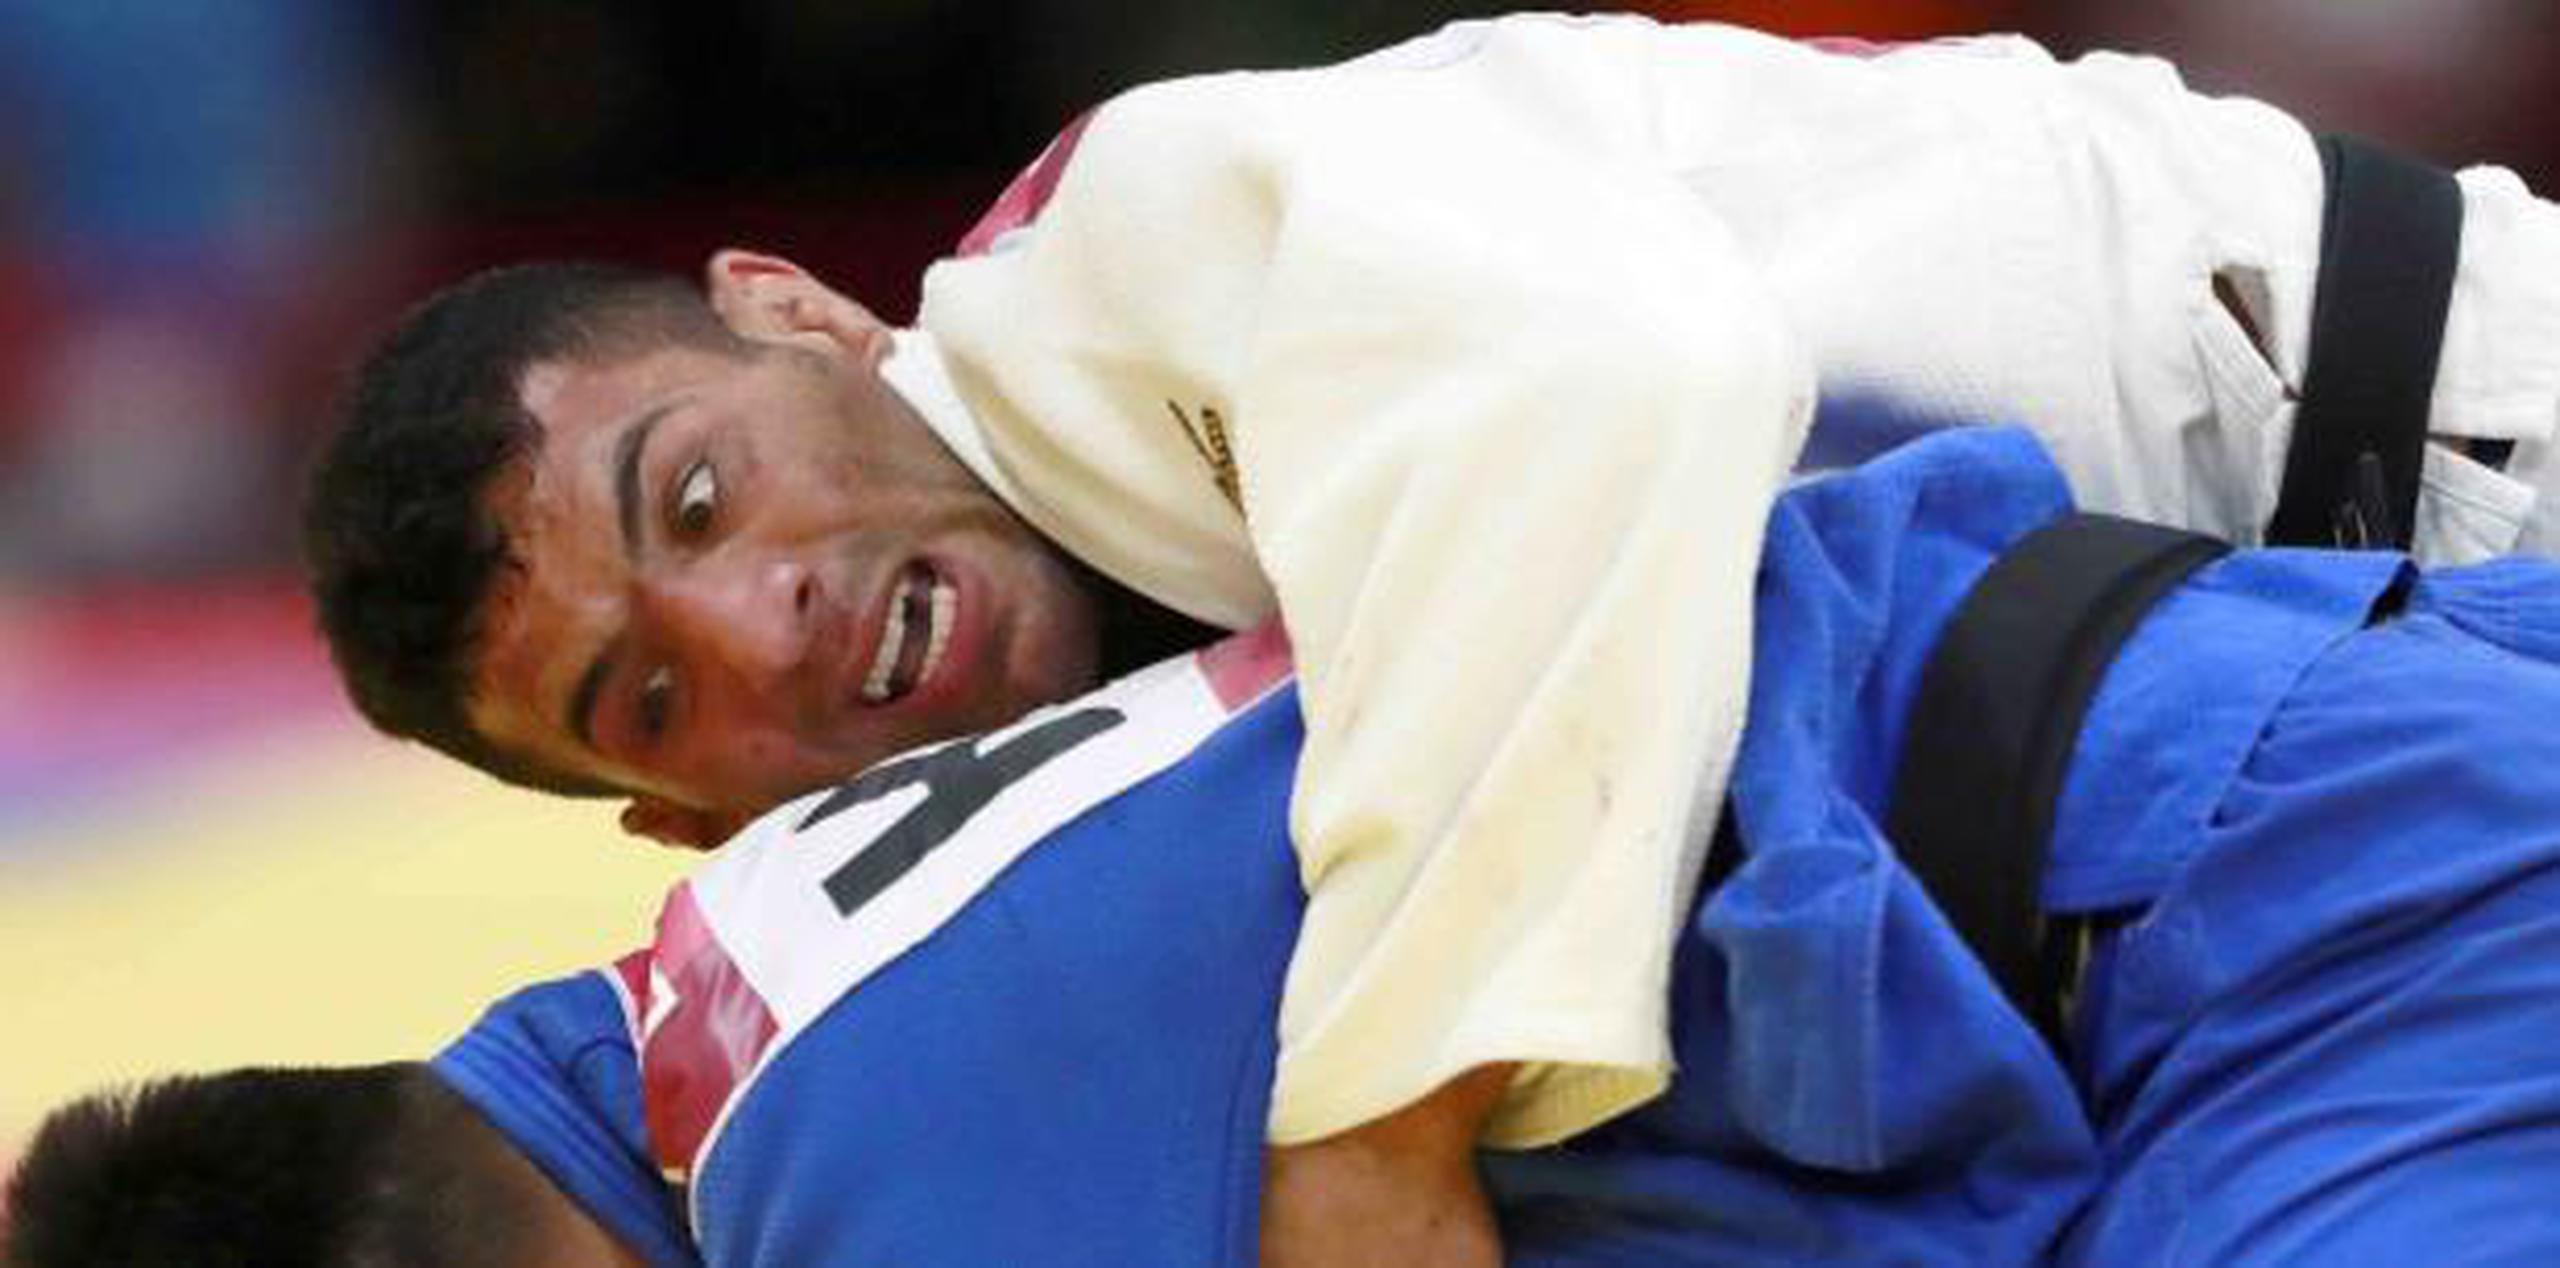 El fallo se produce luego que Saeid Mollaei, campeón mundial en 2018, dejó al equipo de Irán en agosto tras denunciar que se le había ordenado perder combates y retirarse de competiciones para no tener que enfrentar a judocas de Israel. (AP)